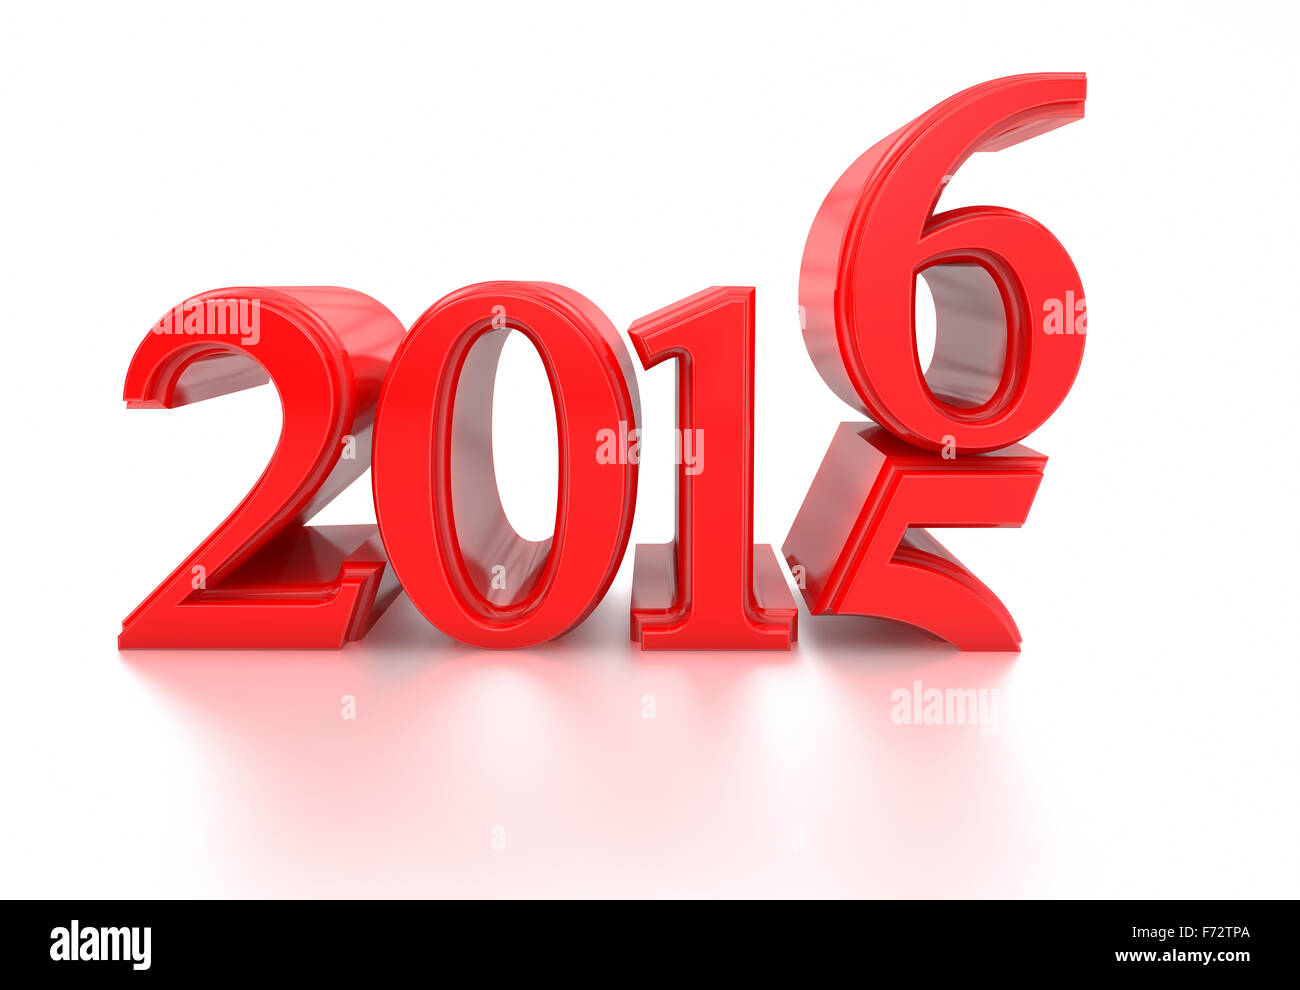 3d 2016. 2015-2016 changement représente la nouvelle année 2016, le rendu en trois dimensions. Banque D'Images